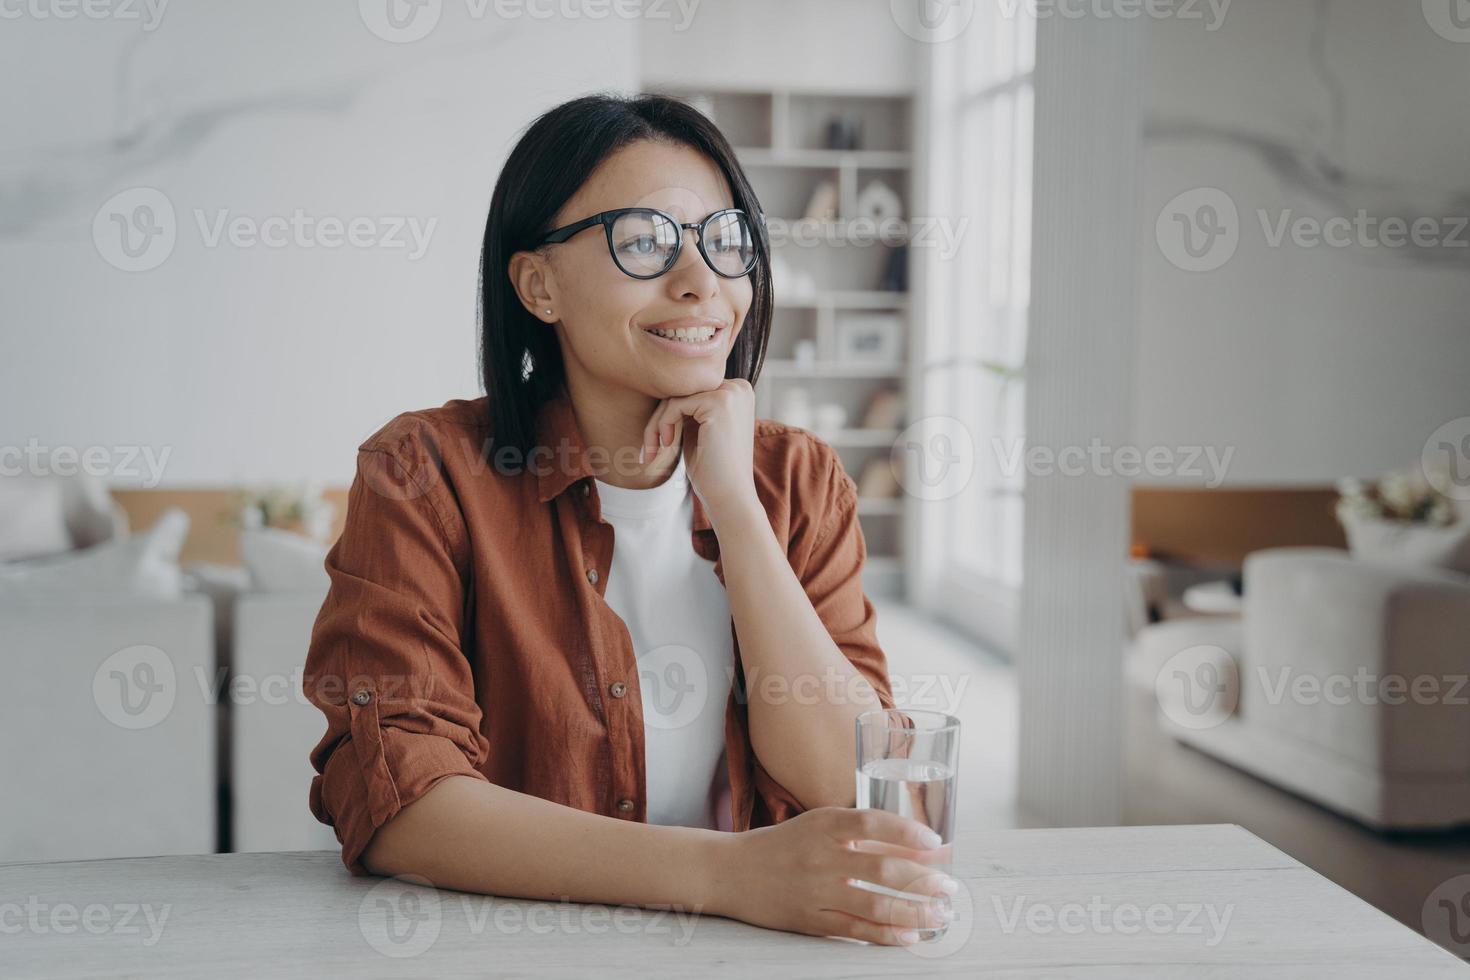 une femme souriante profite d'une eau minérale purifiée tenant un verre assis à la maison. mode de vie sain, alimentation photo